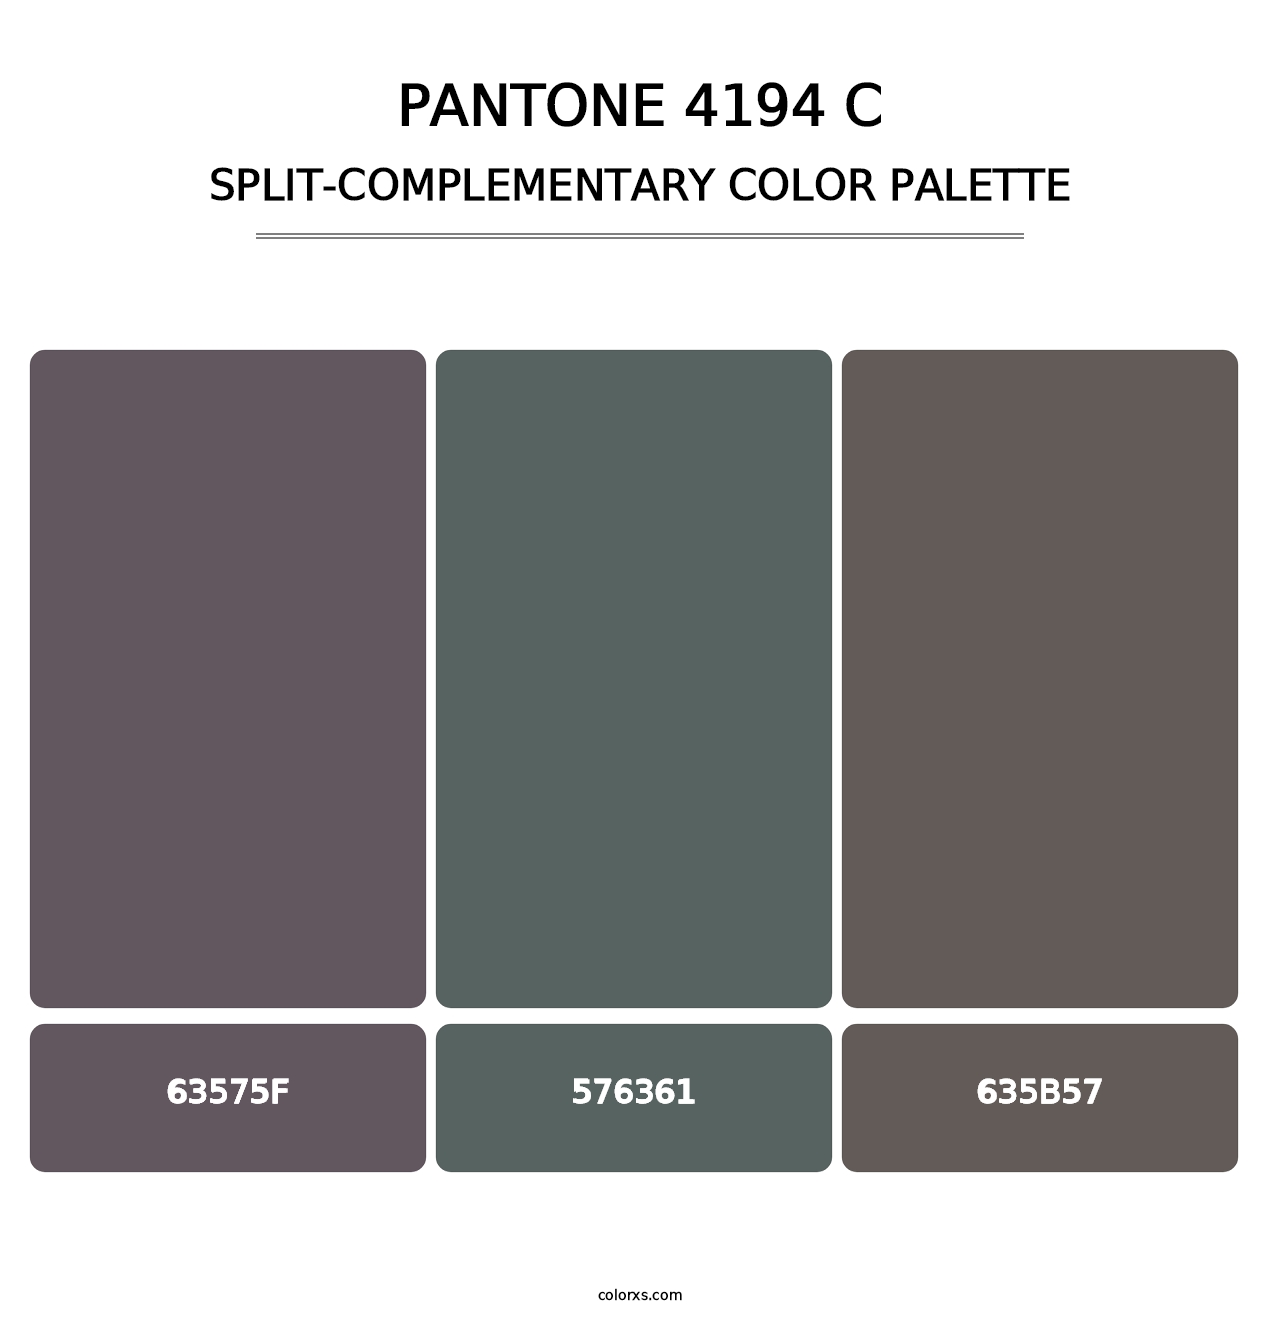 PANTONE 4194 C - Split-Complementary Color Palette